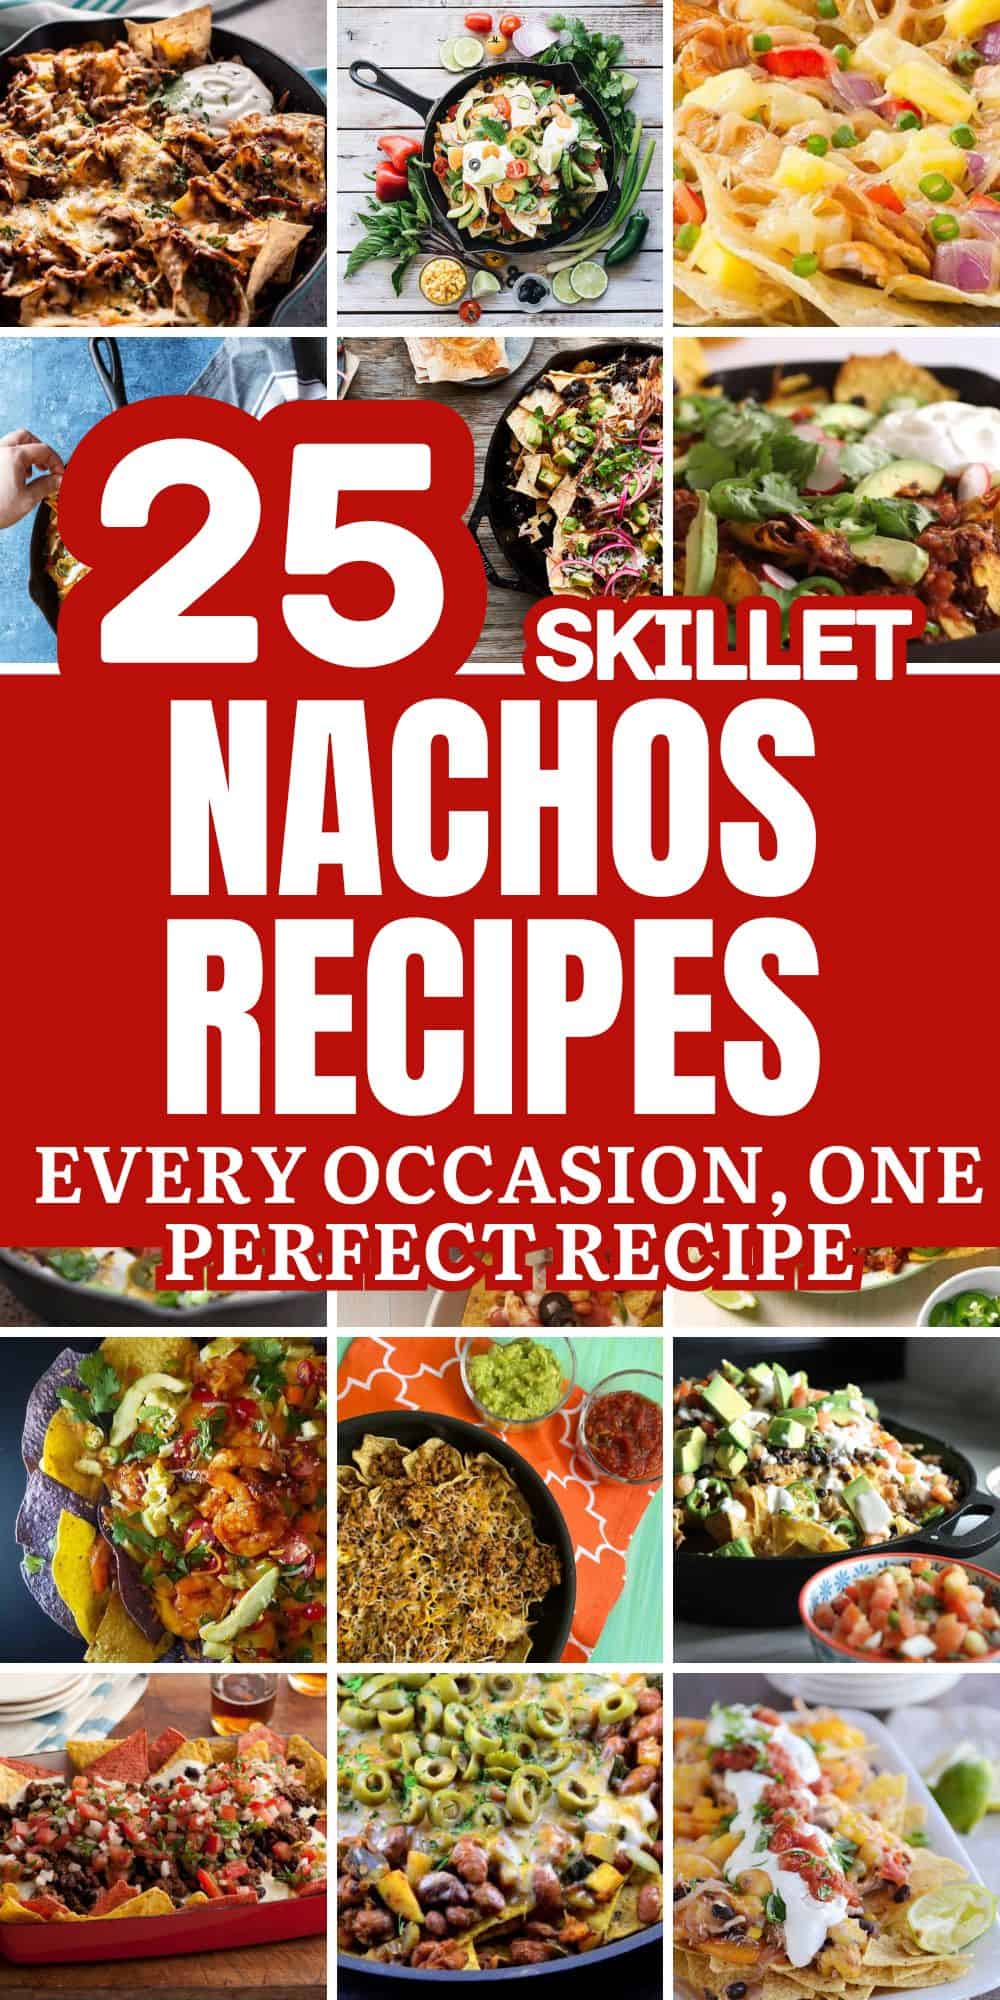 Skillet Nachos Recipes